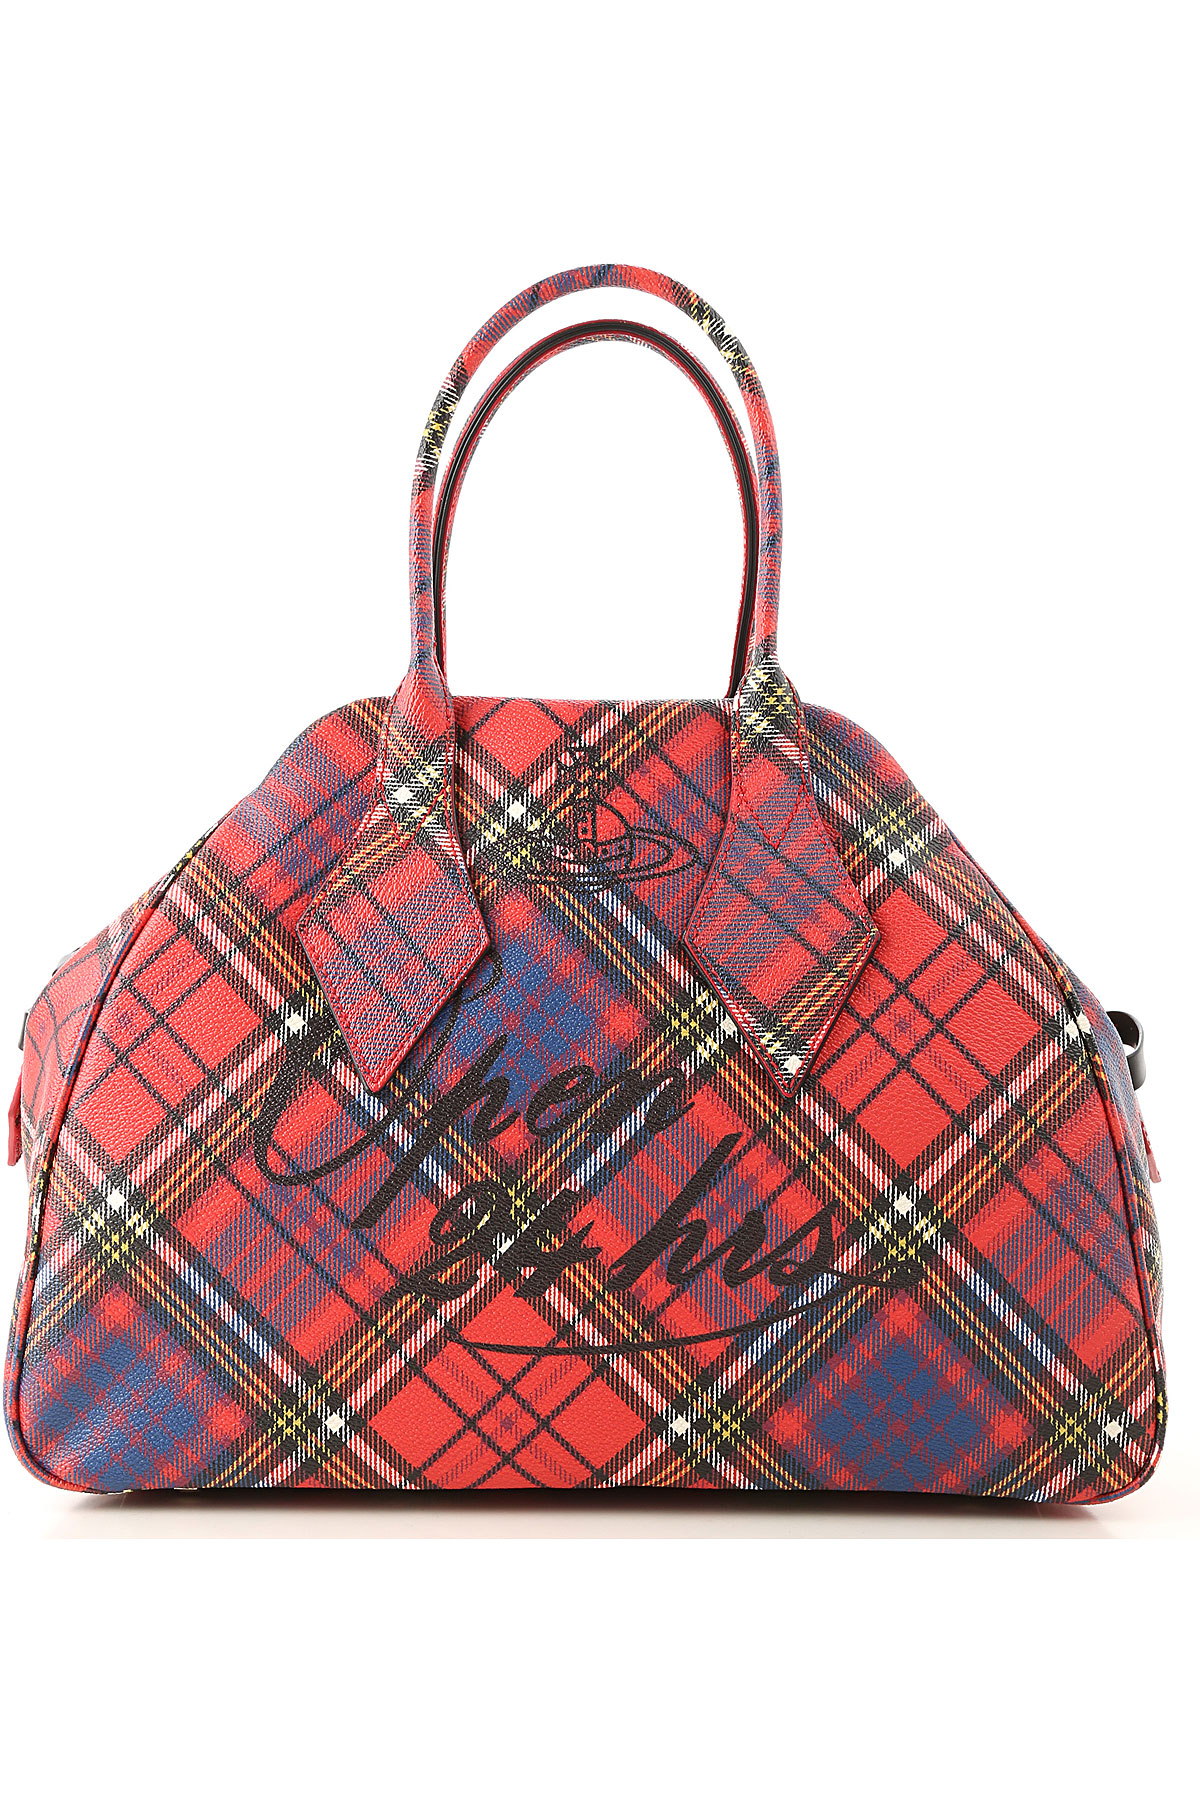 Handbags Vivienne Westwood, Style code: 45010001-10256-